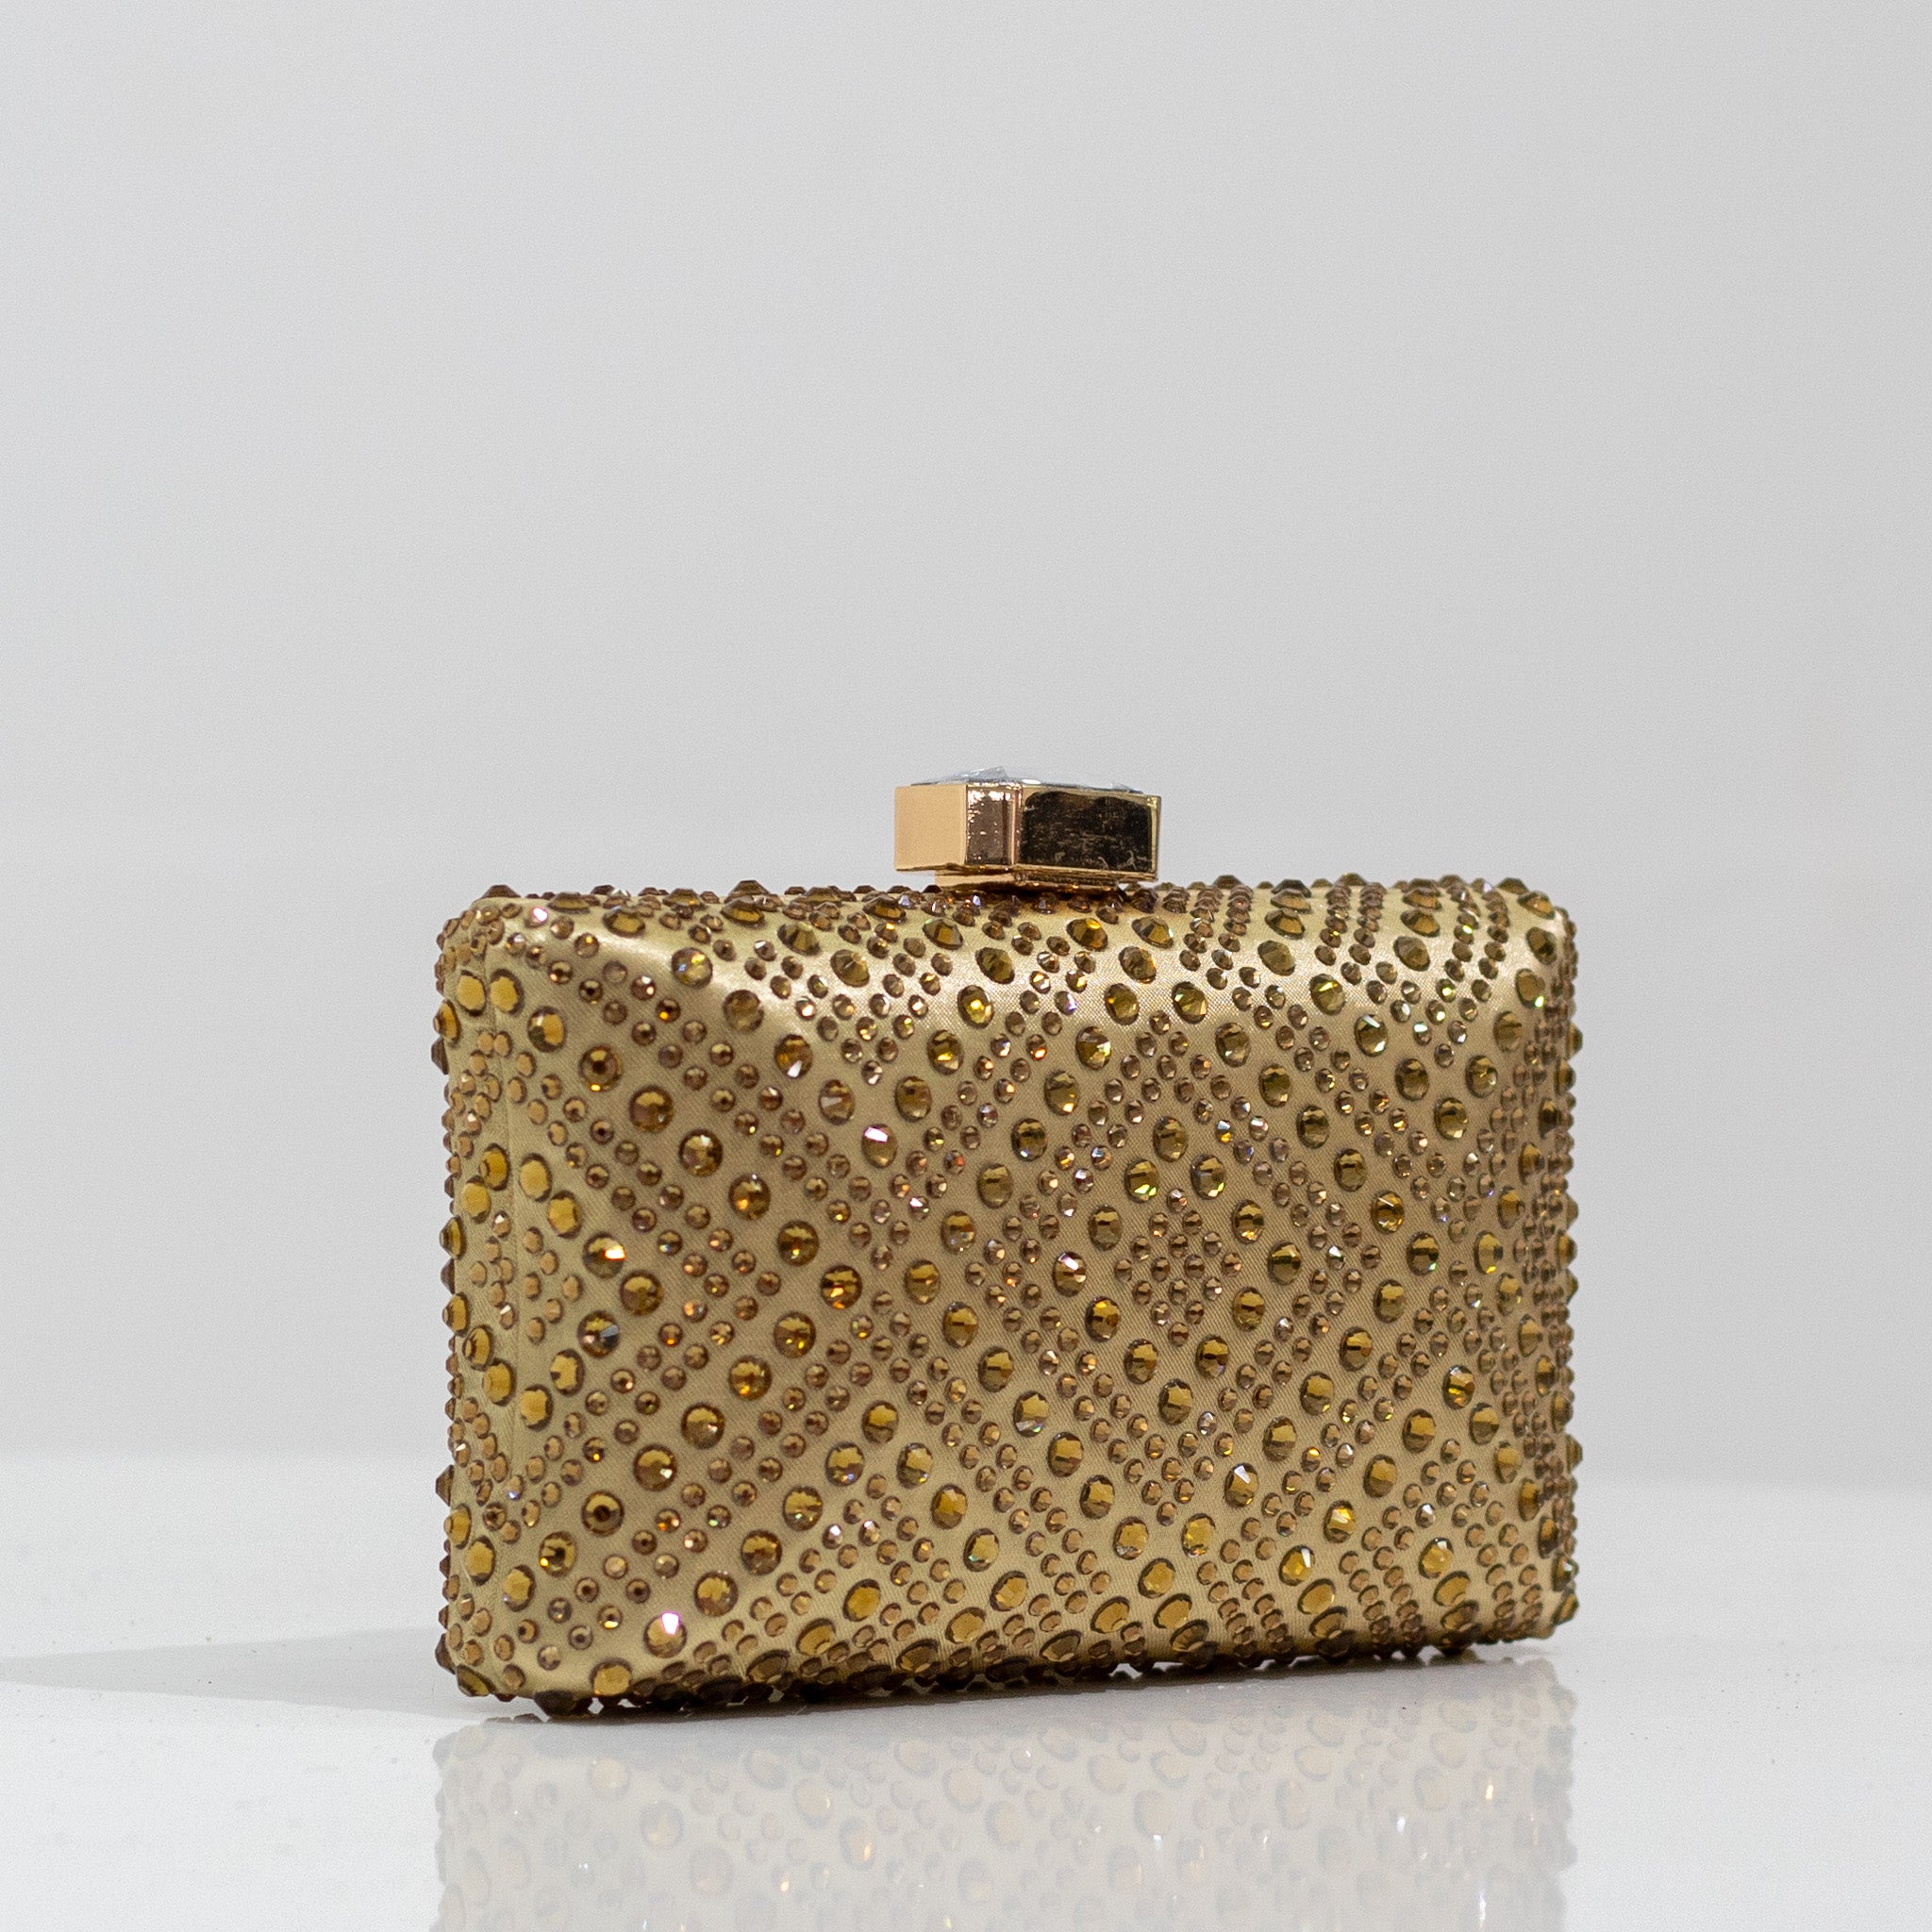 Xayah diamante designs clasp clutch bag gold